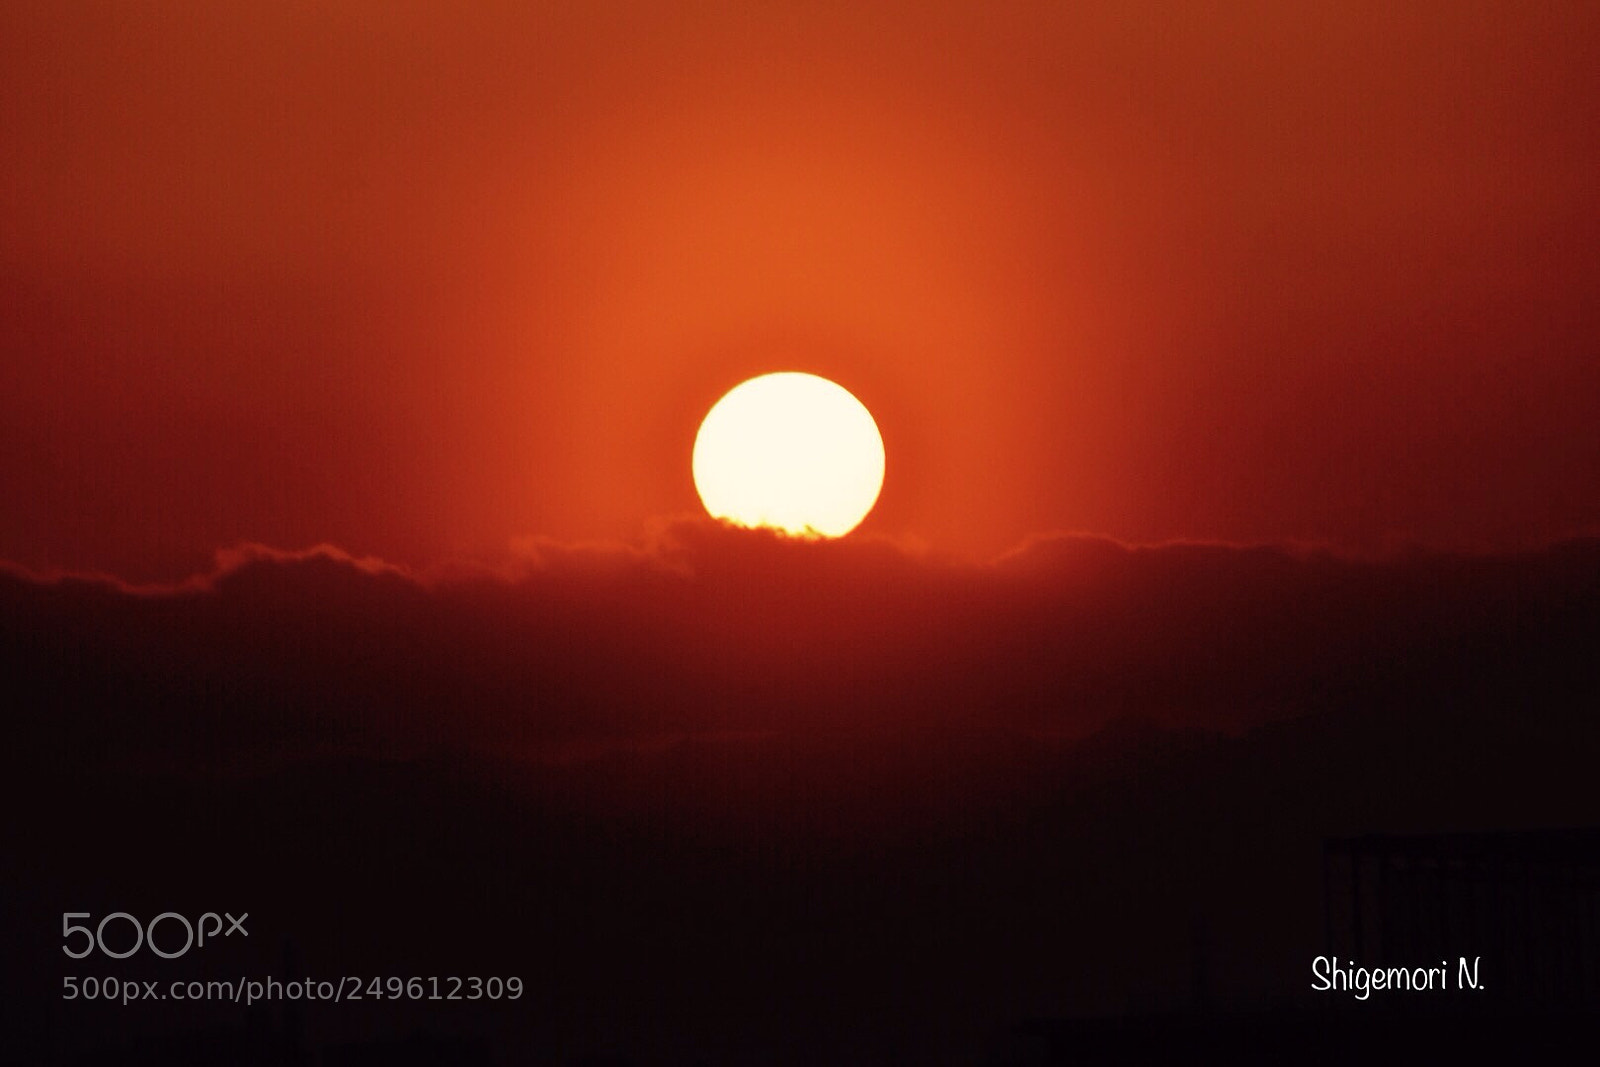 Nikon D750 sample photo. Sunset photography